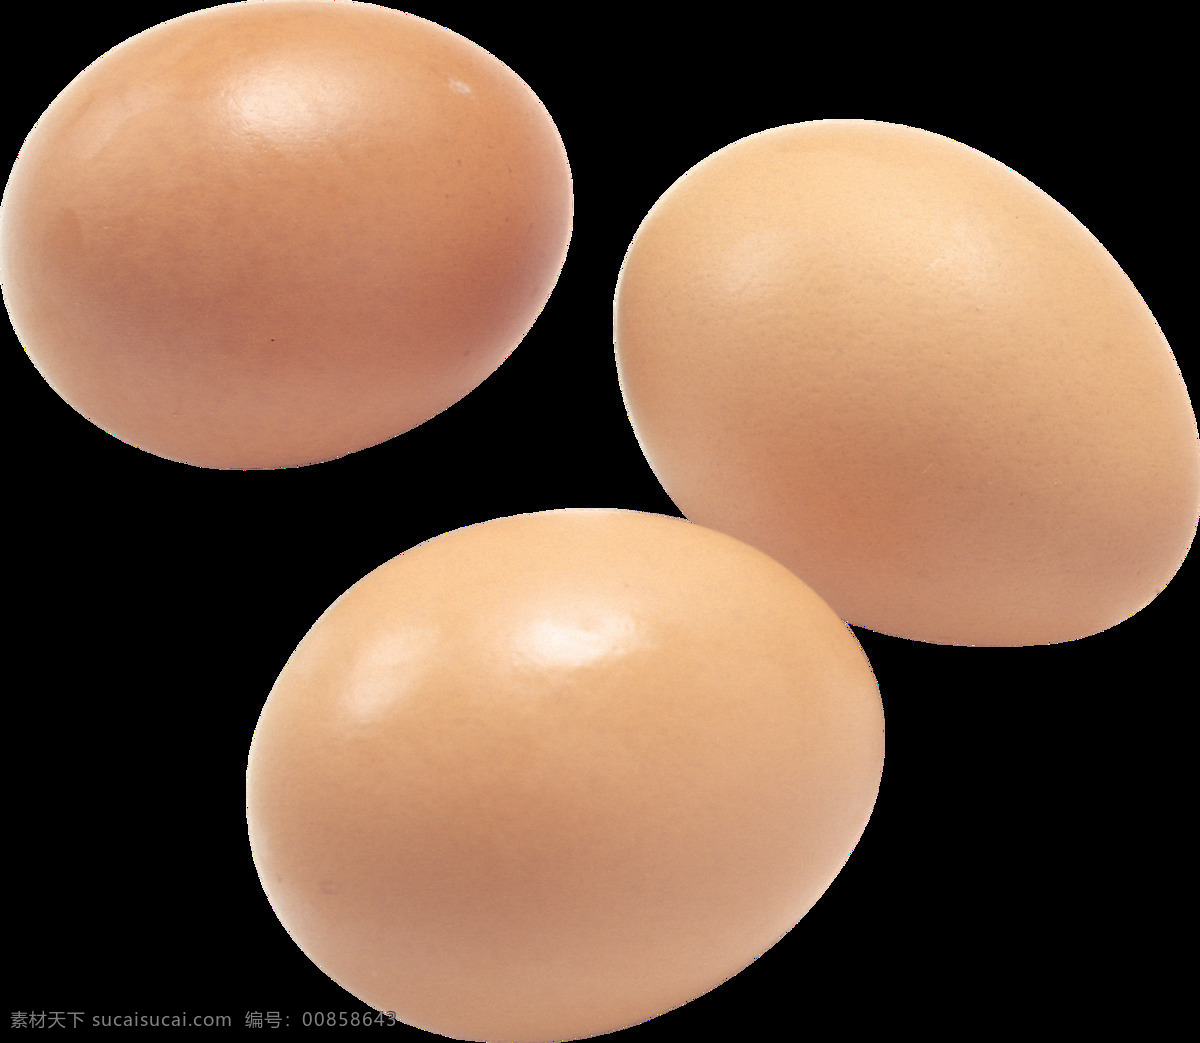 鸡蛋图片 鸡蛋 蛋 蛋黄 蛋清 蛋壳 png图 透明图 免扣图 透明背景 透明底 抠图